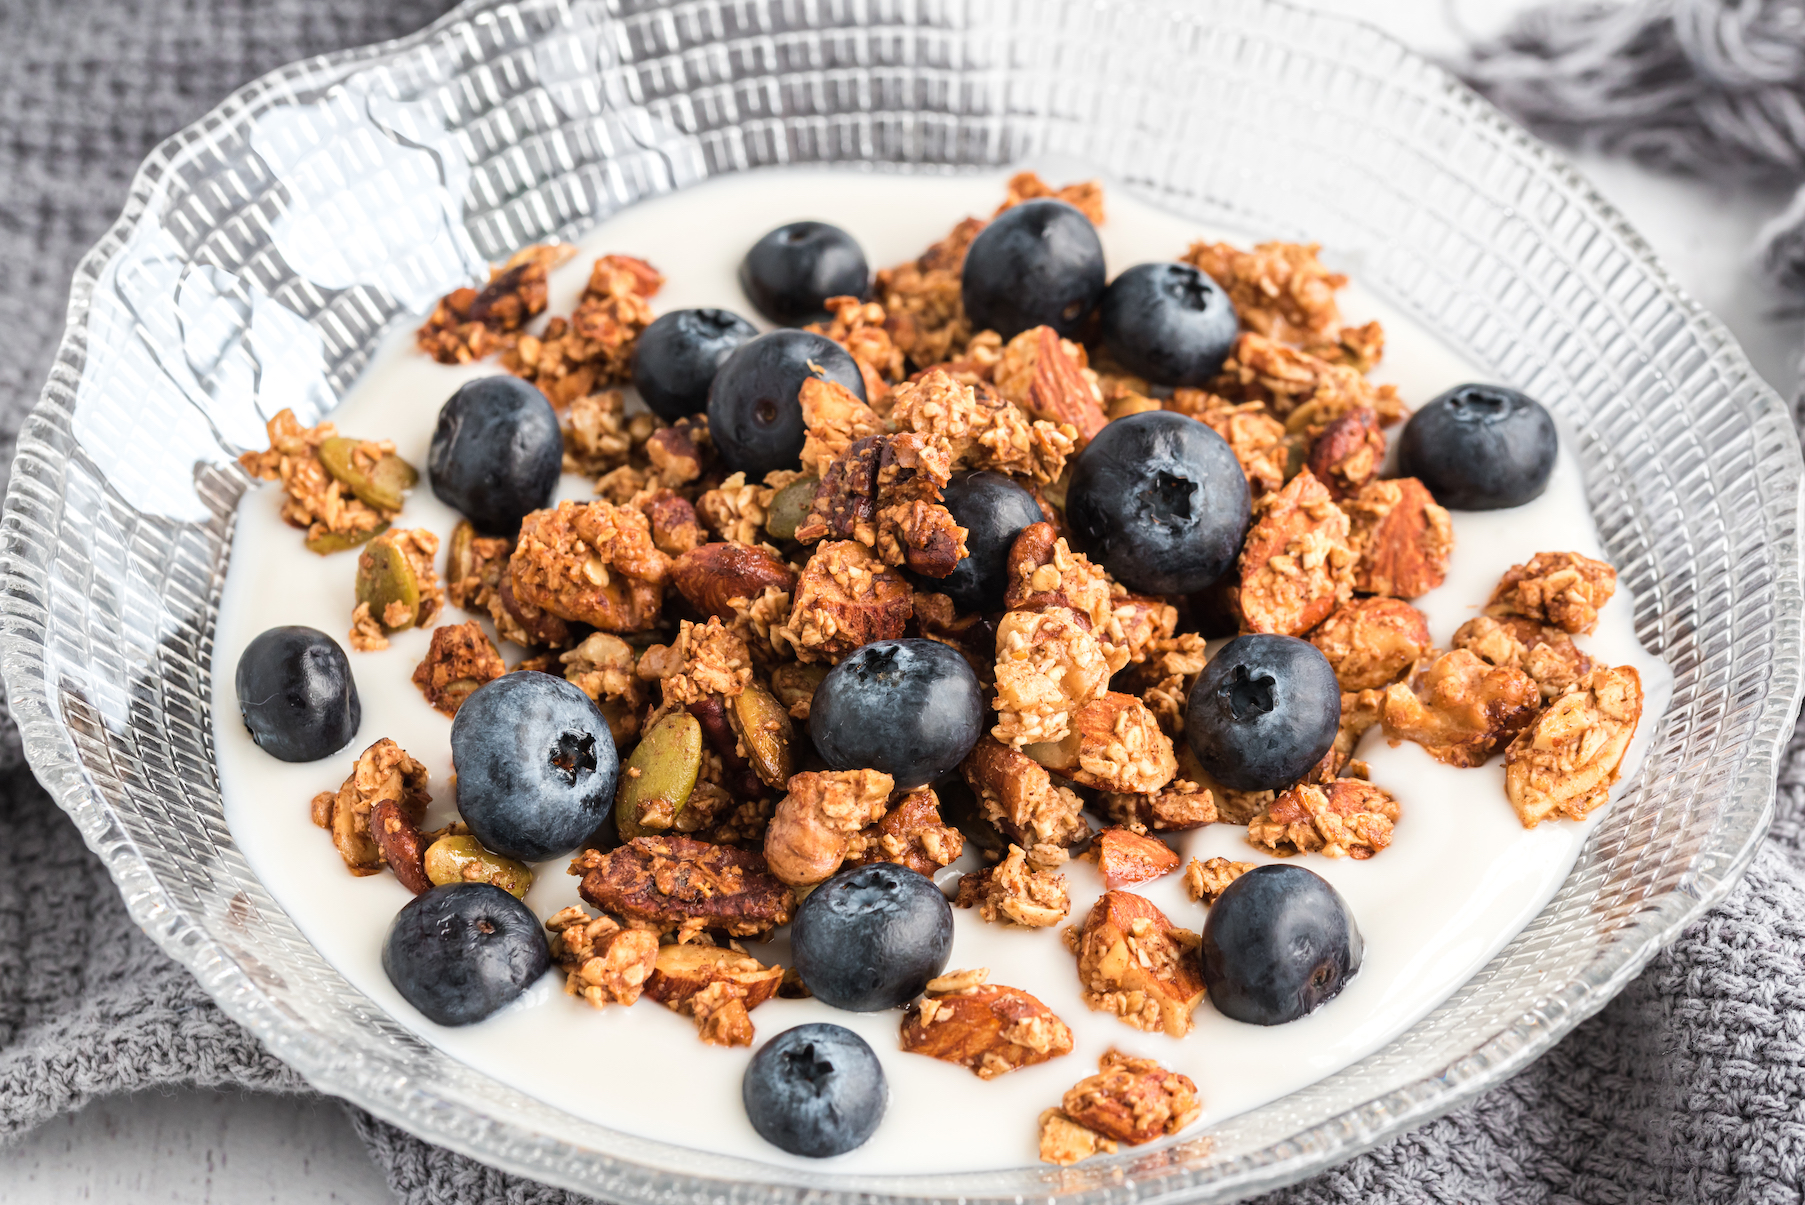 homemade granola with yogurt and berries